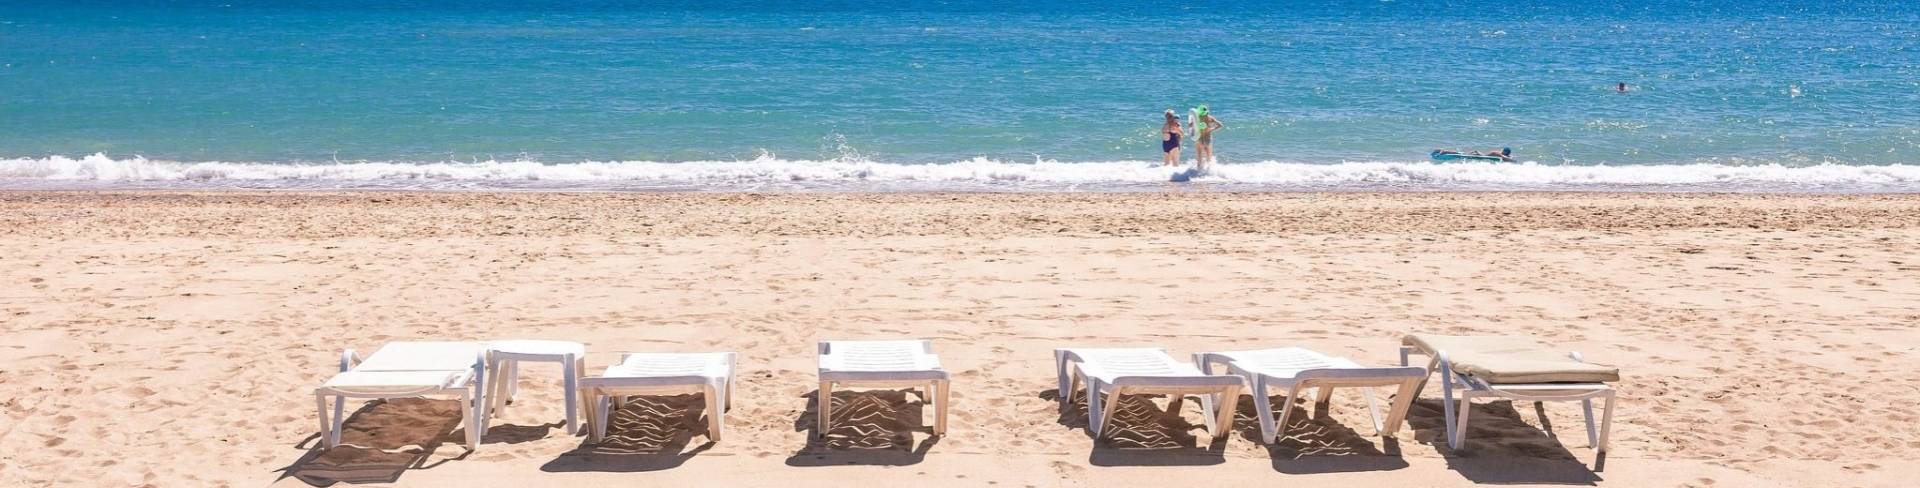 Белек - пляжный курорт на Средиземном море в Турции